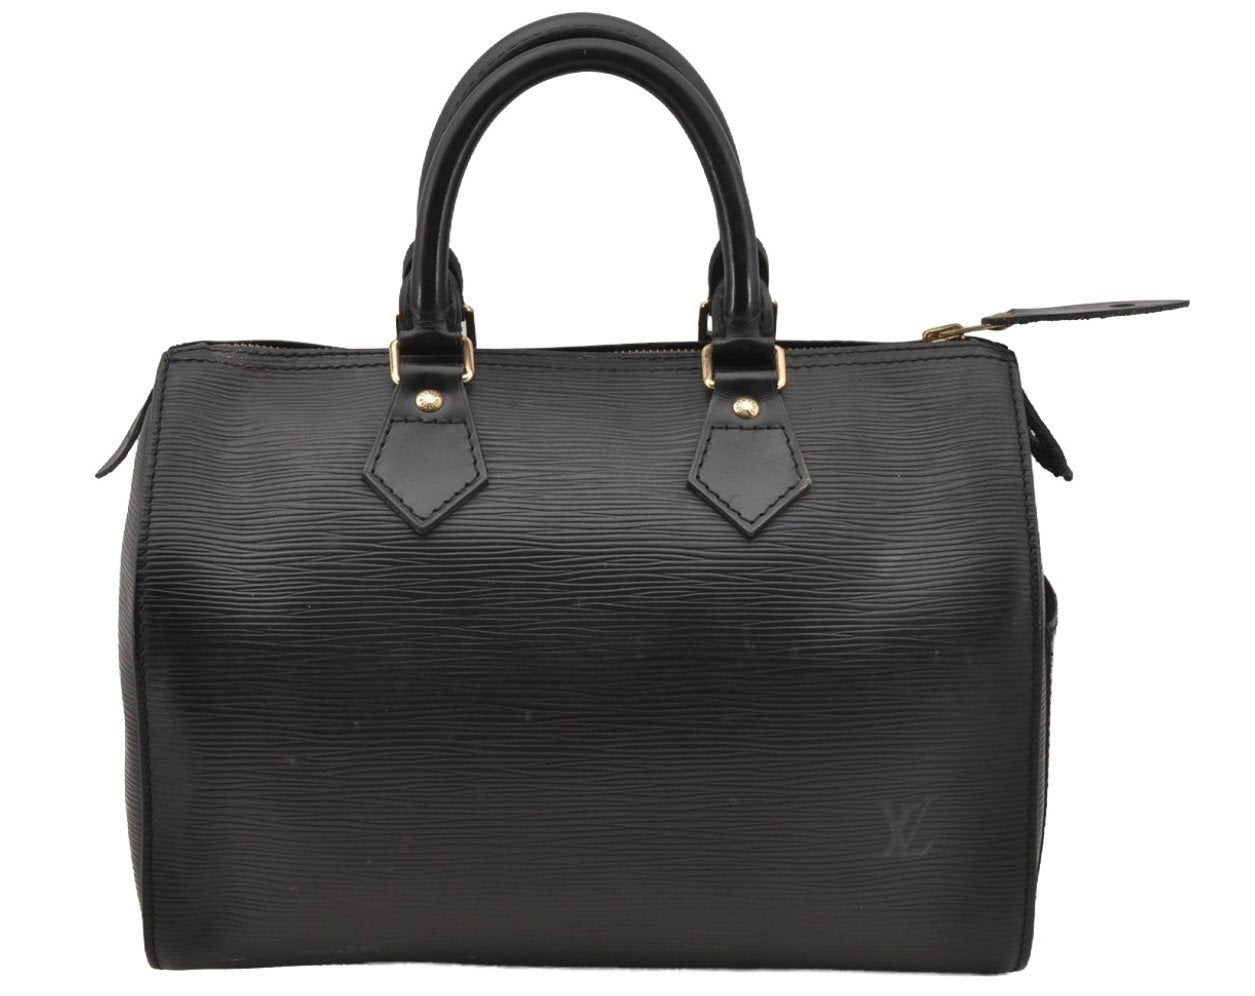 Authentic Louis Vuitton Epi Speedy 25 Hand Boston Bag Black M59032 LV 7957I